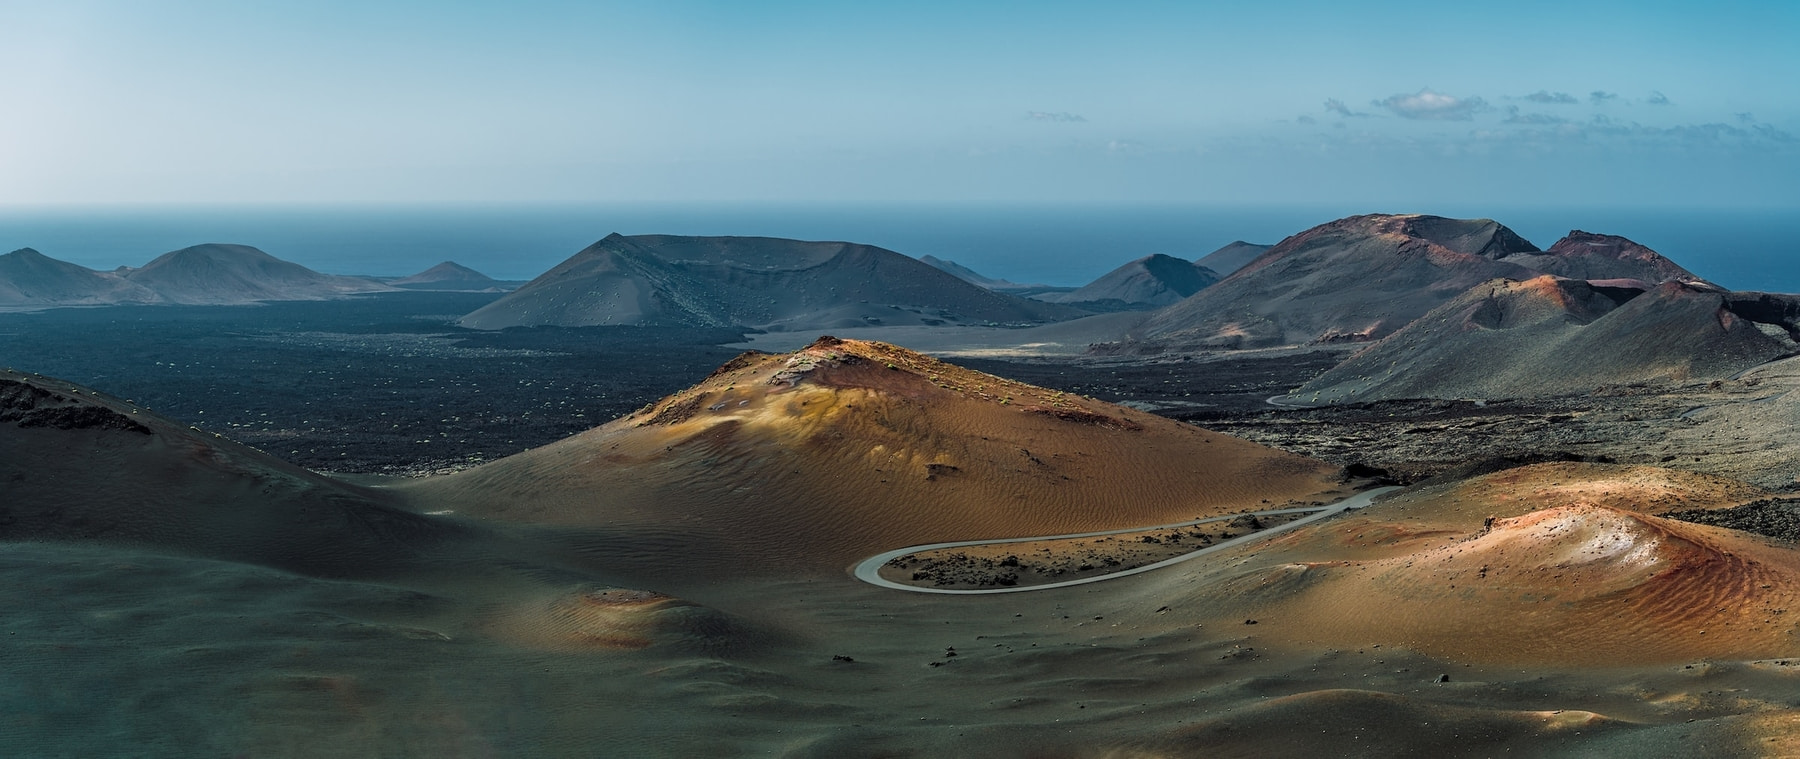 Excursión a Timanfaya de día completo desde Fuerteventura